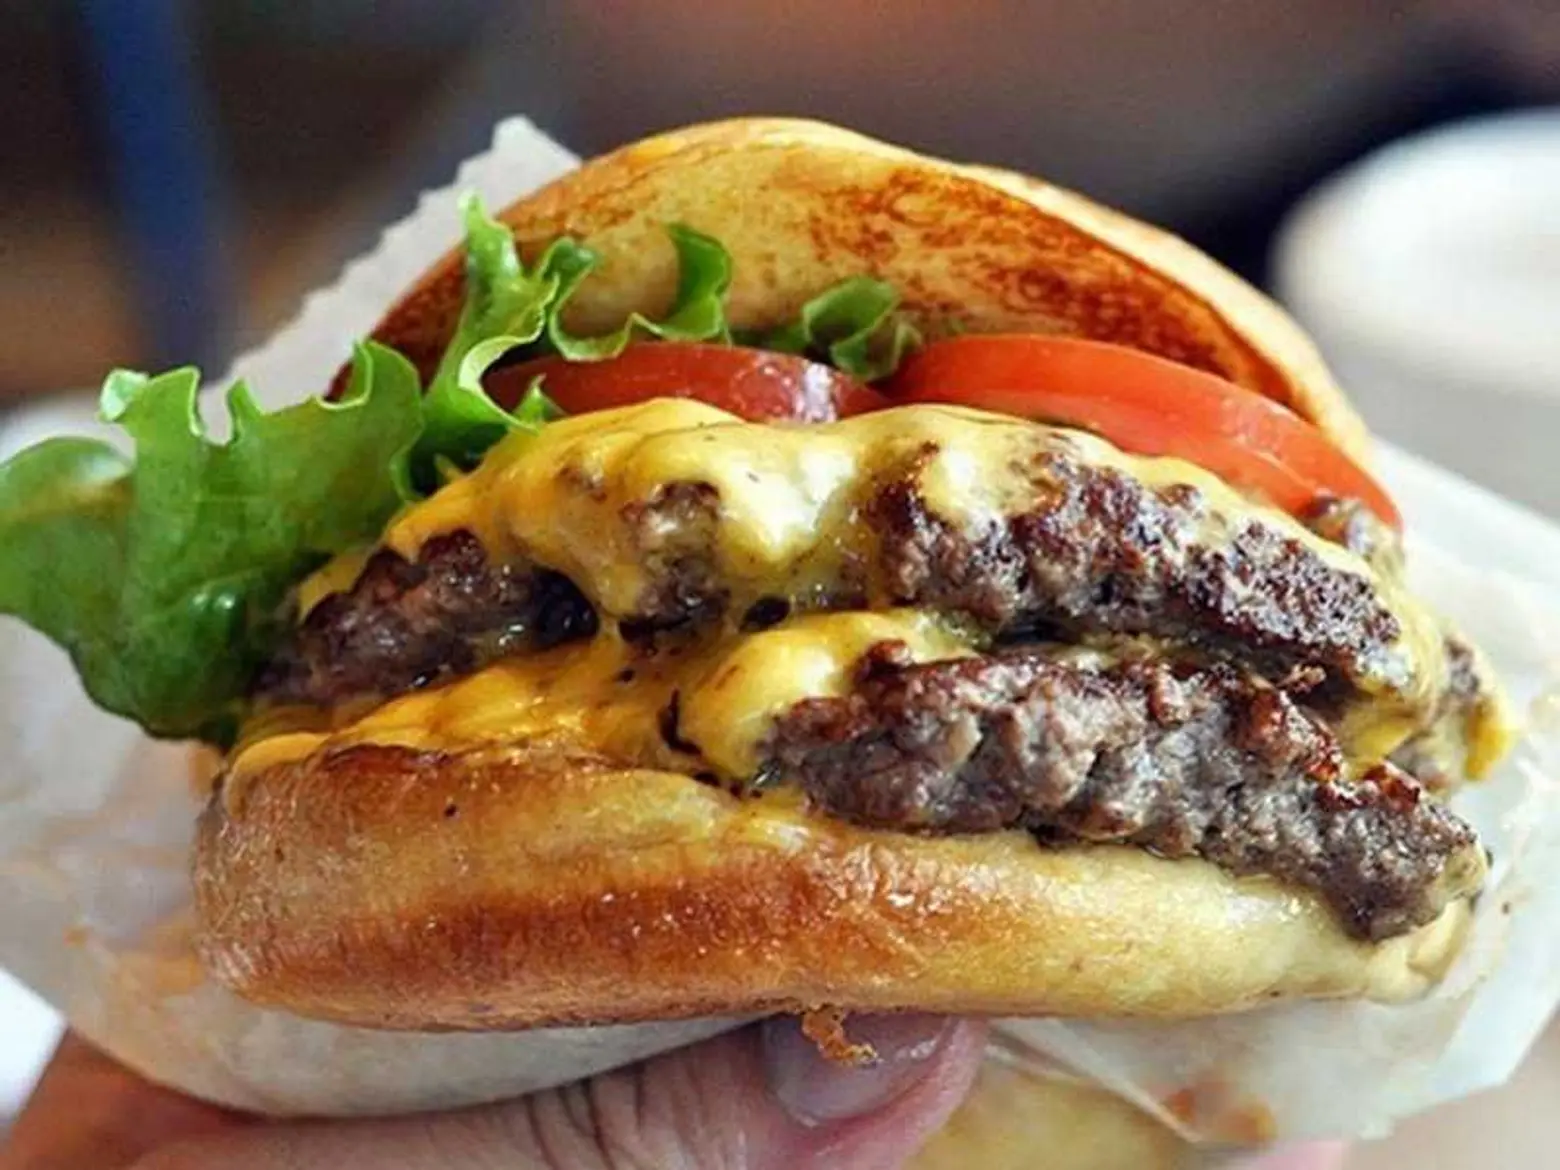 Get a free Shake Shack burger via their new app